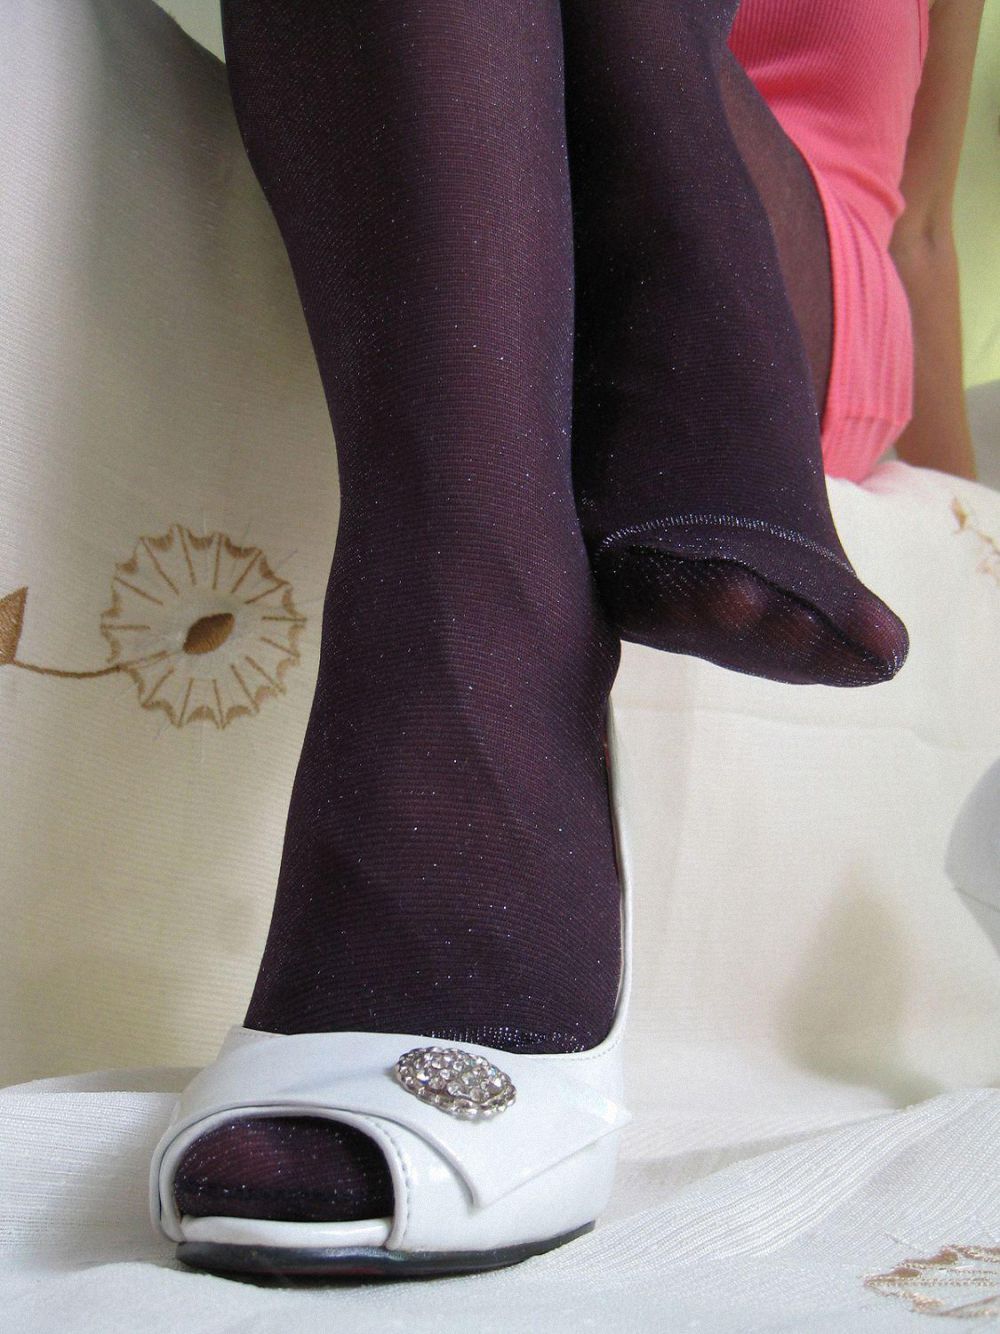 [网络收集] 2013.11.23 诱惑的葡萄紫色丝袜